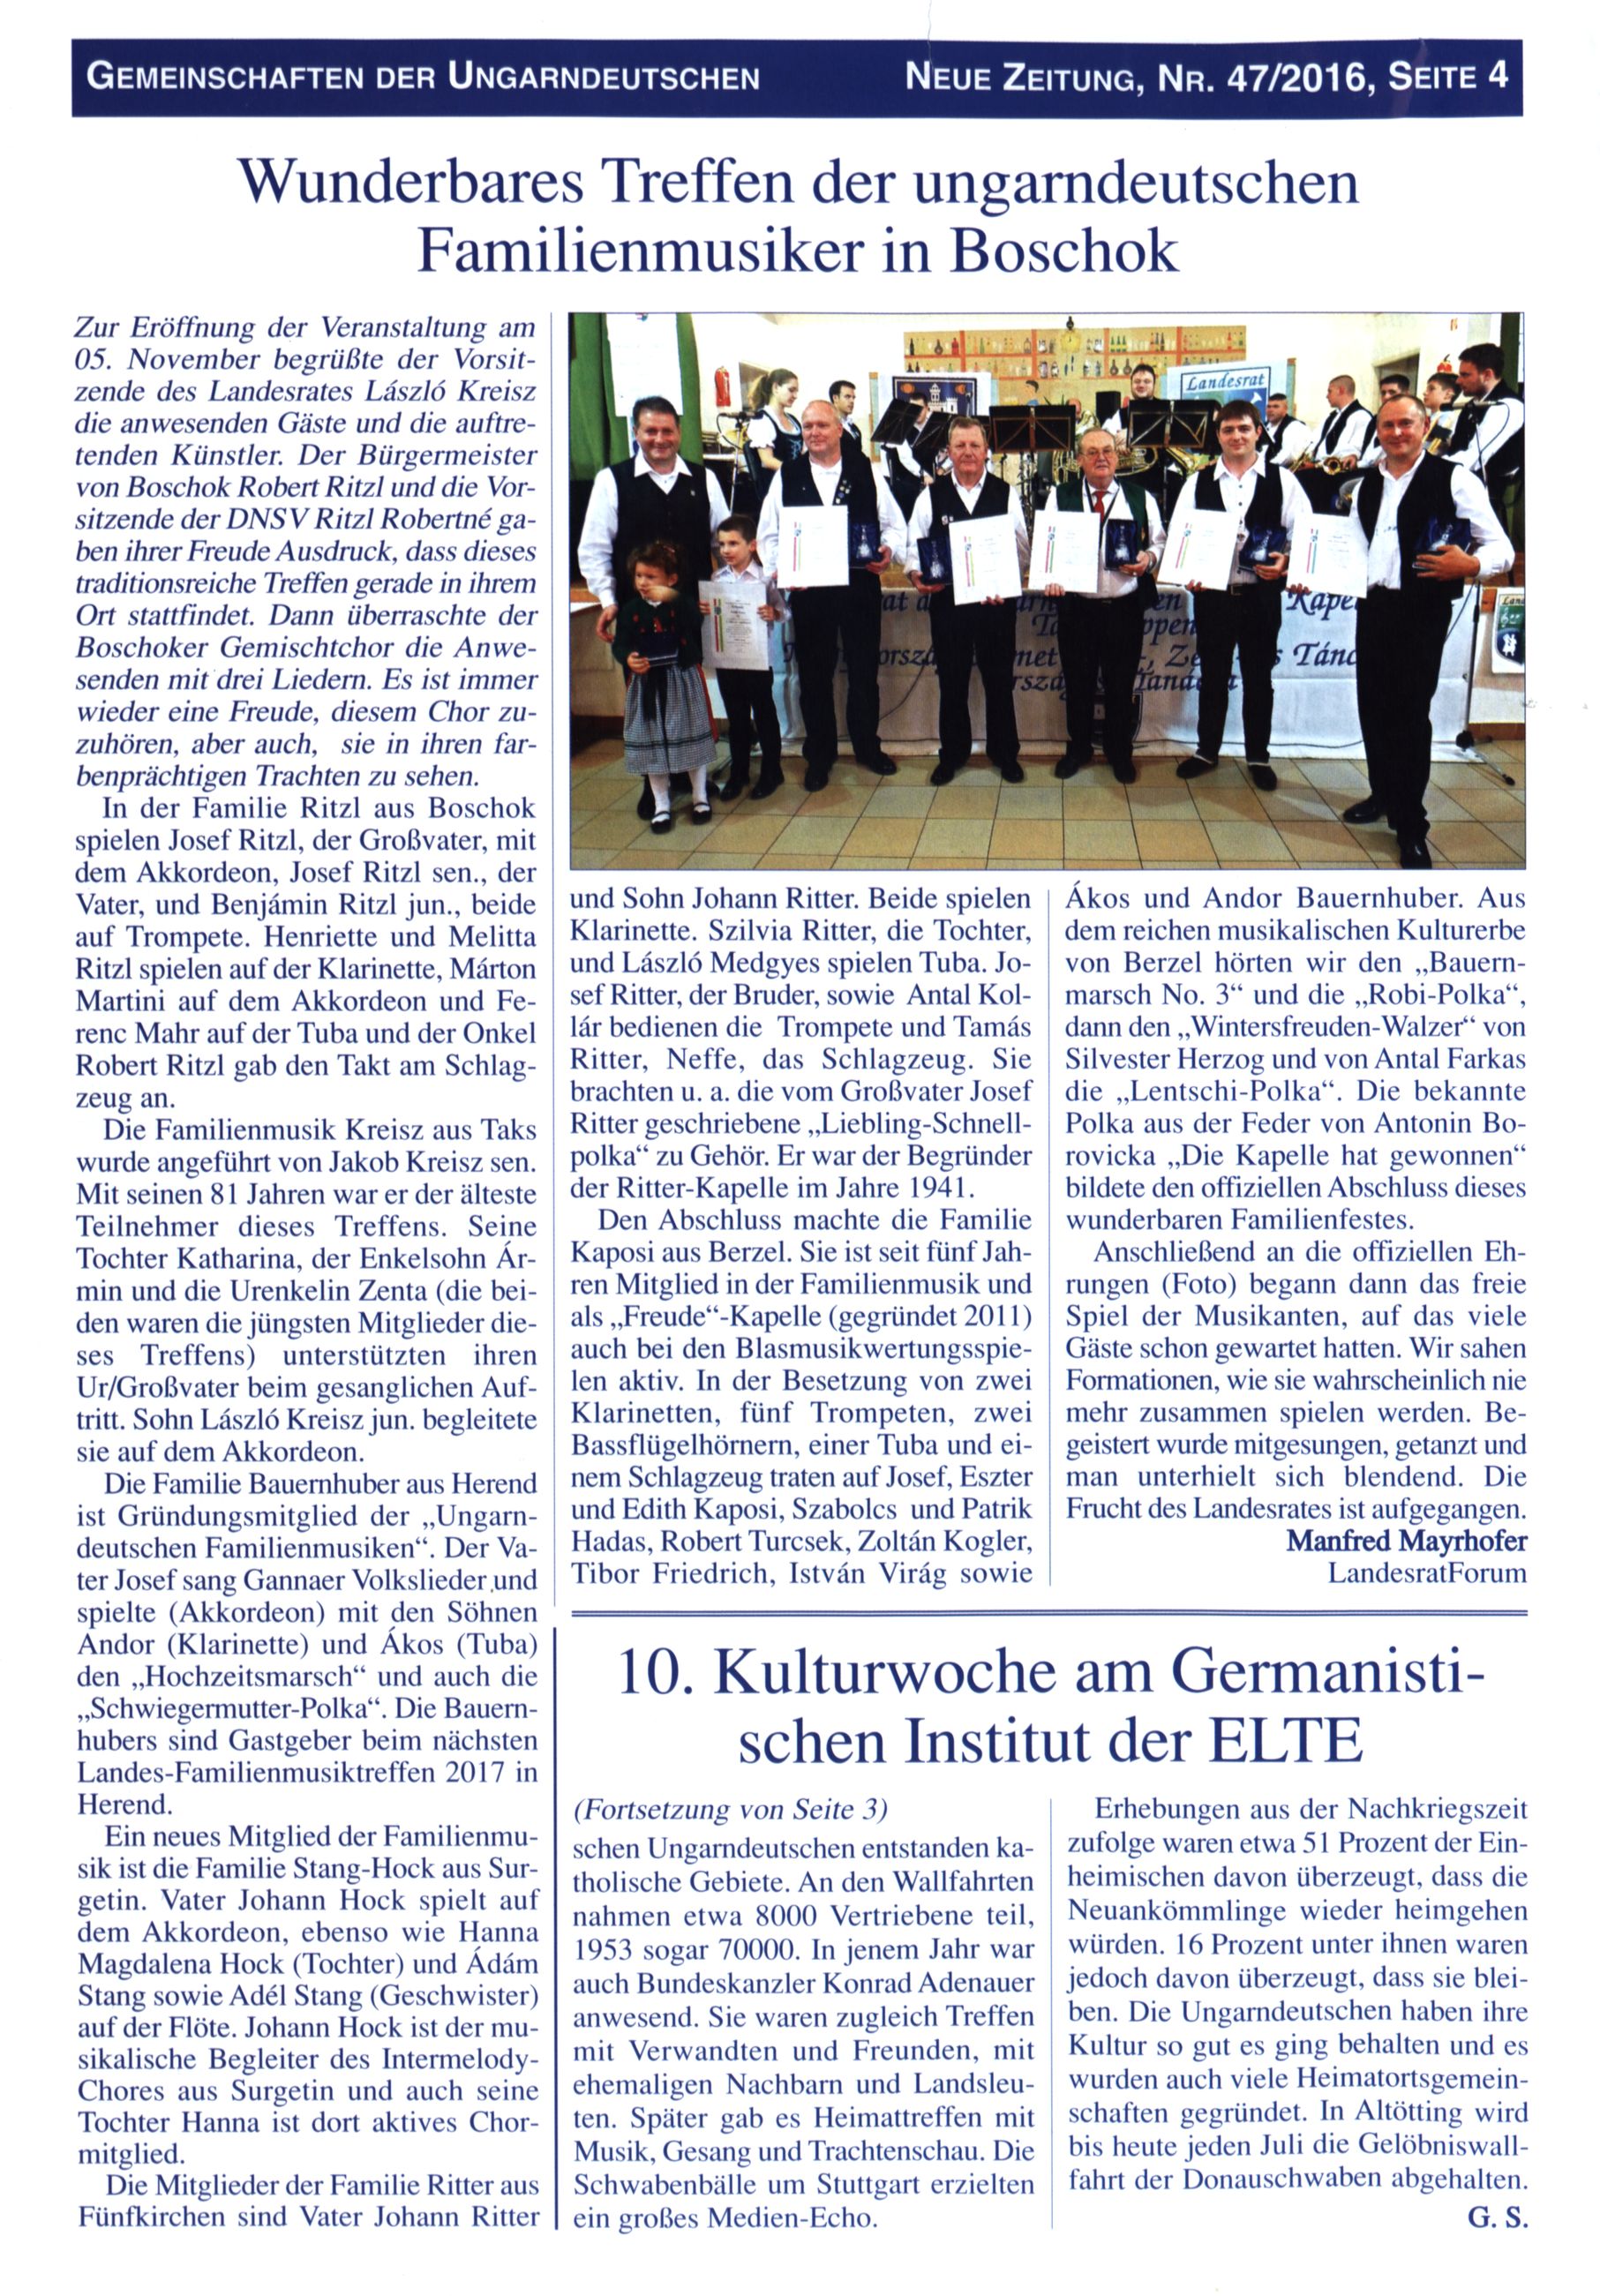 Wunderbares Treffen der ungarndeutschen Familienmusiker in Boschok